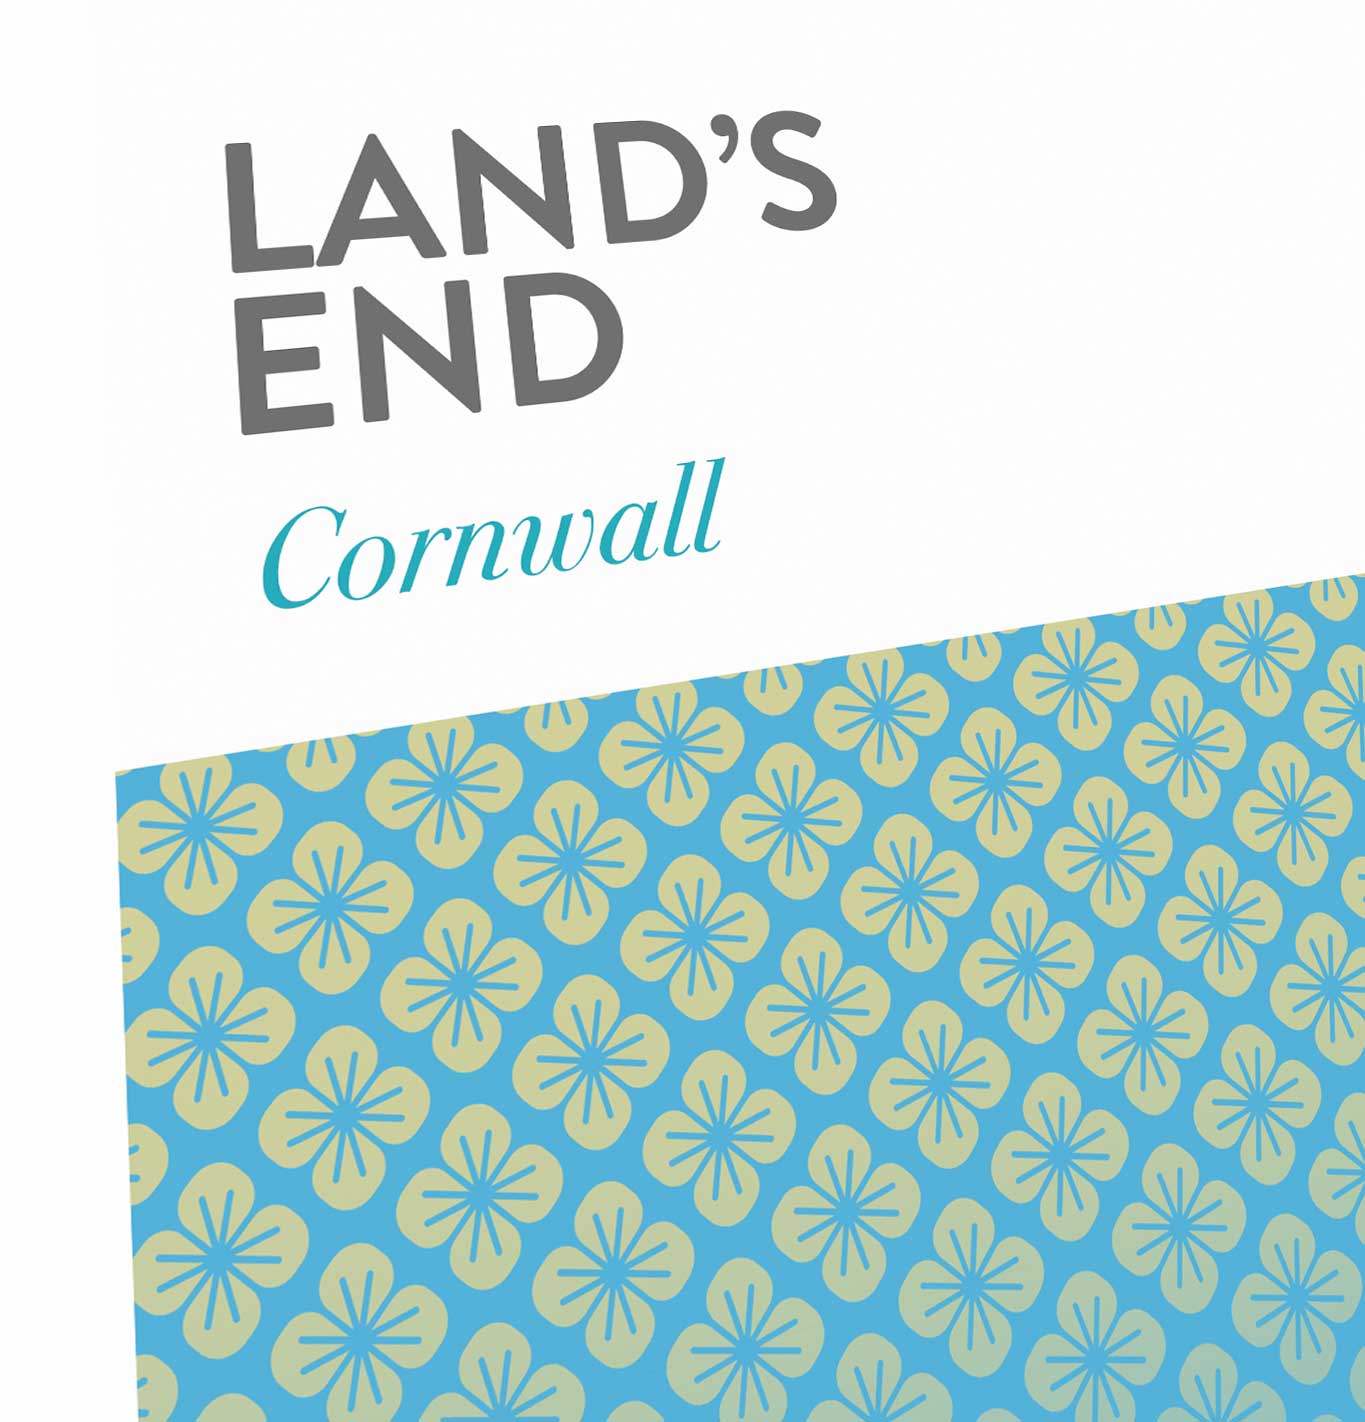 Land's End Cornwall Coastal Abstract Print